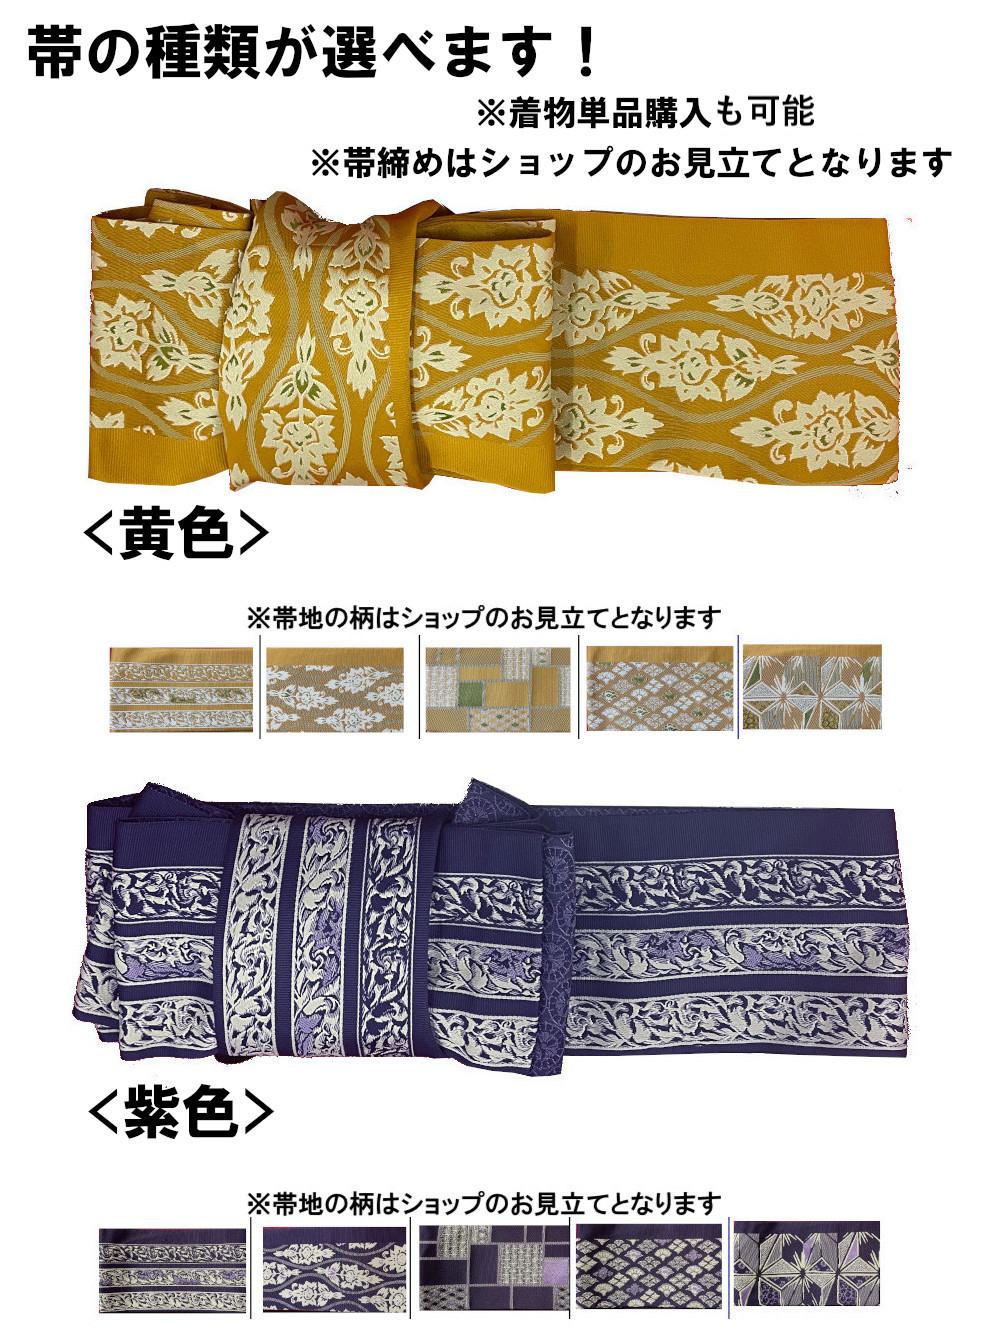 衿なし着物(リボン帯付き) [花雪輪 薄青] ※着物単品 ¥11,000画像